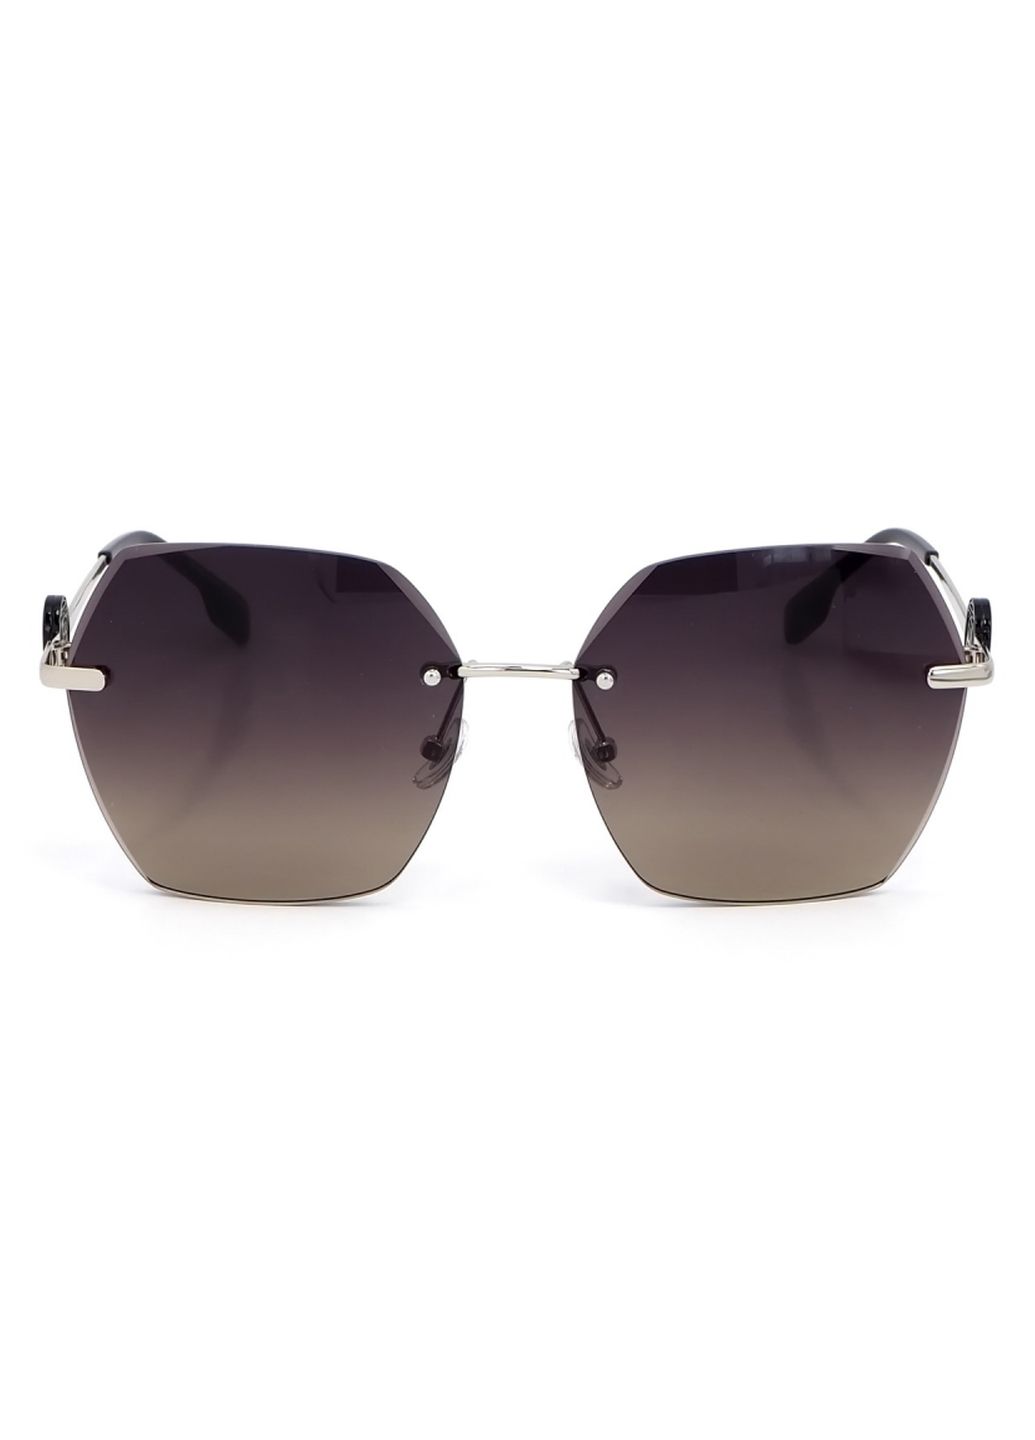 Купить Женские солнцезащитные очки Merlini с поляризацией S31848 117121 - Серый в интернет-магазине